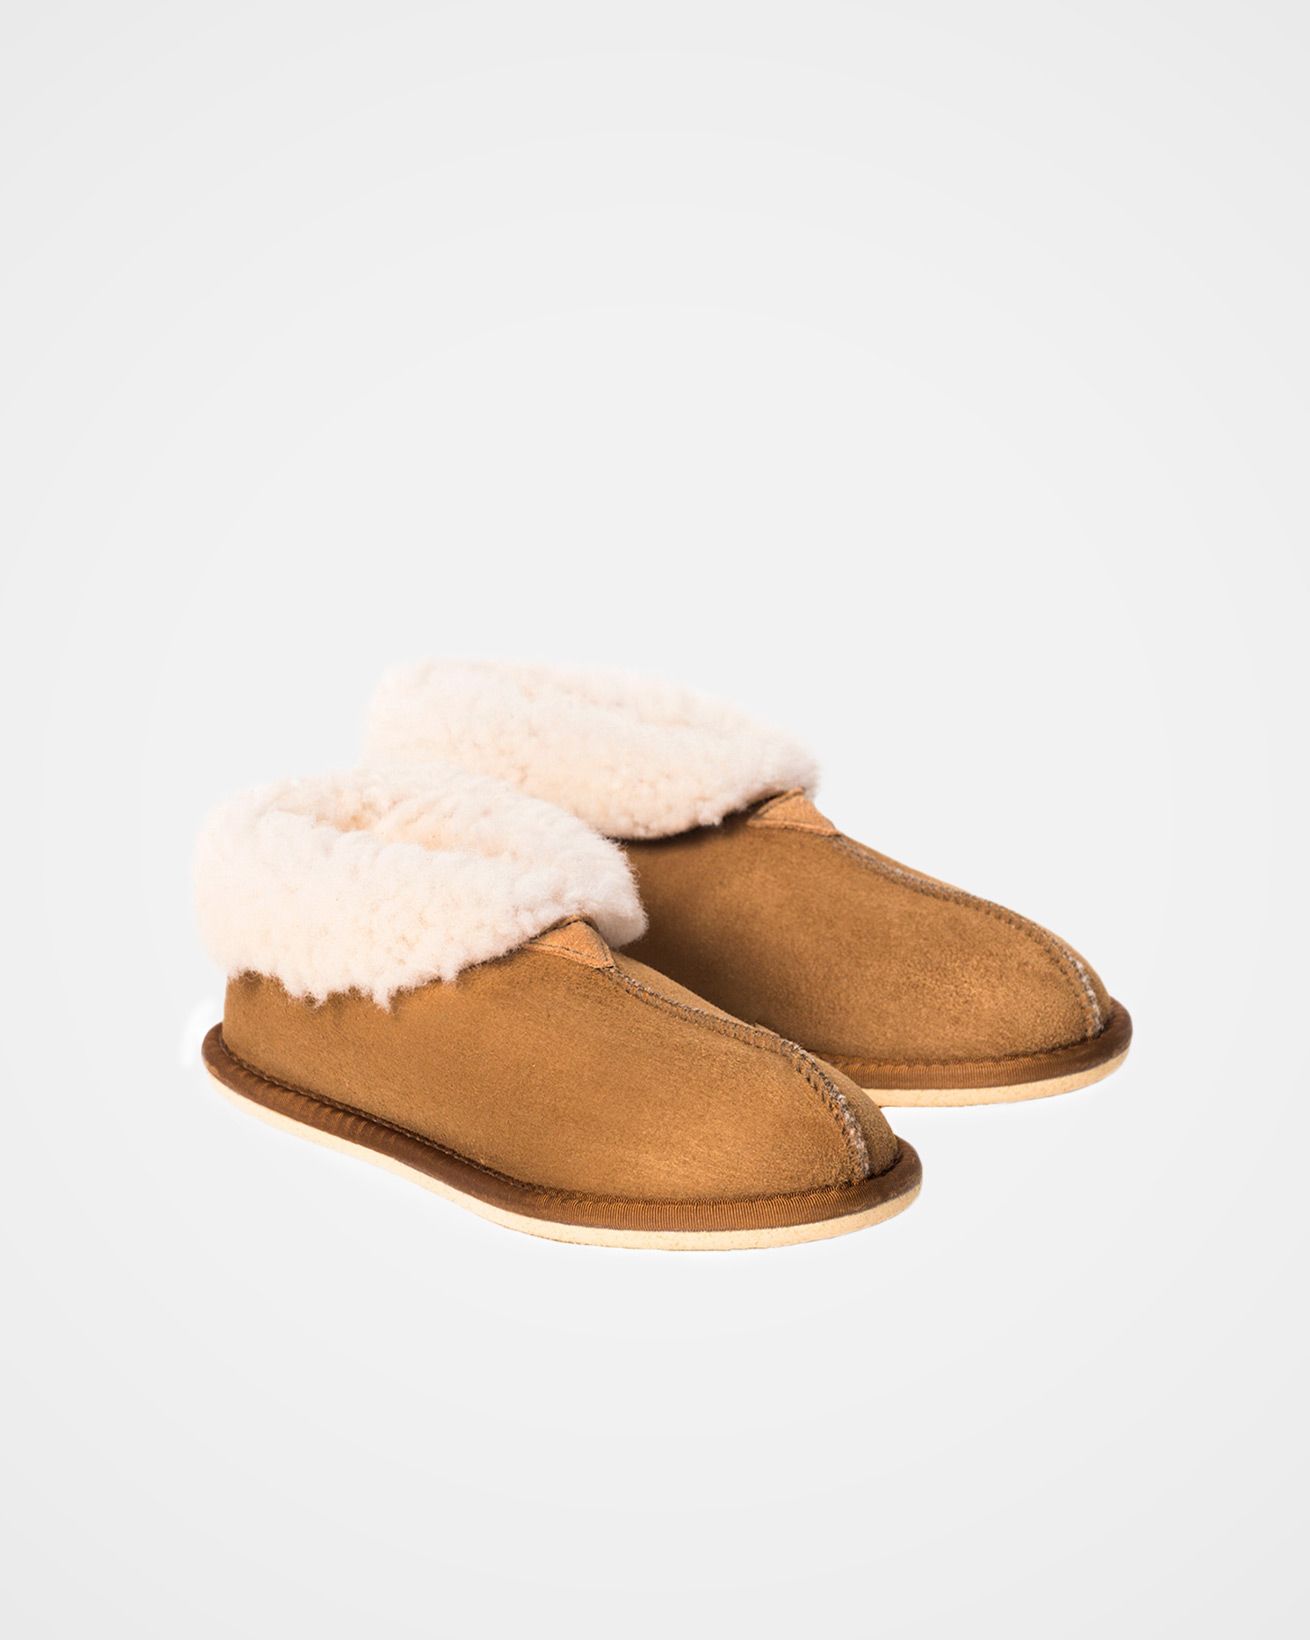 2100_ladies-sheepskin-bootee-slippers_spice_pair2.jpg